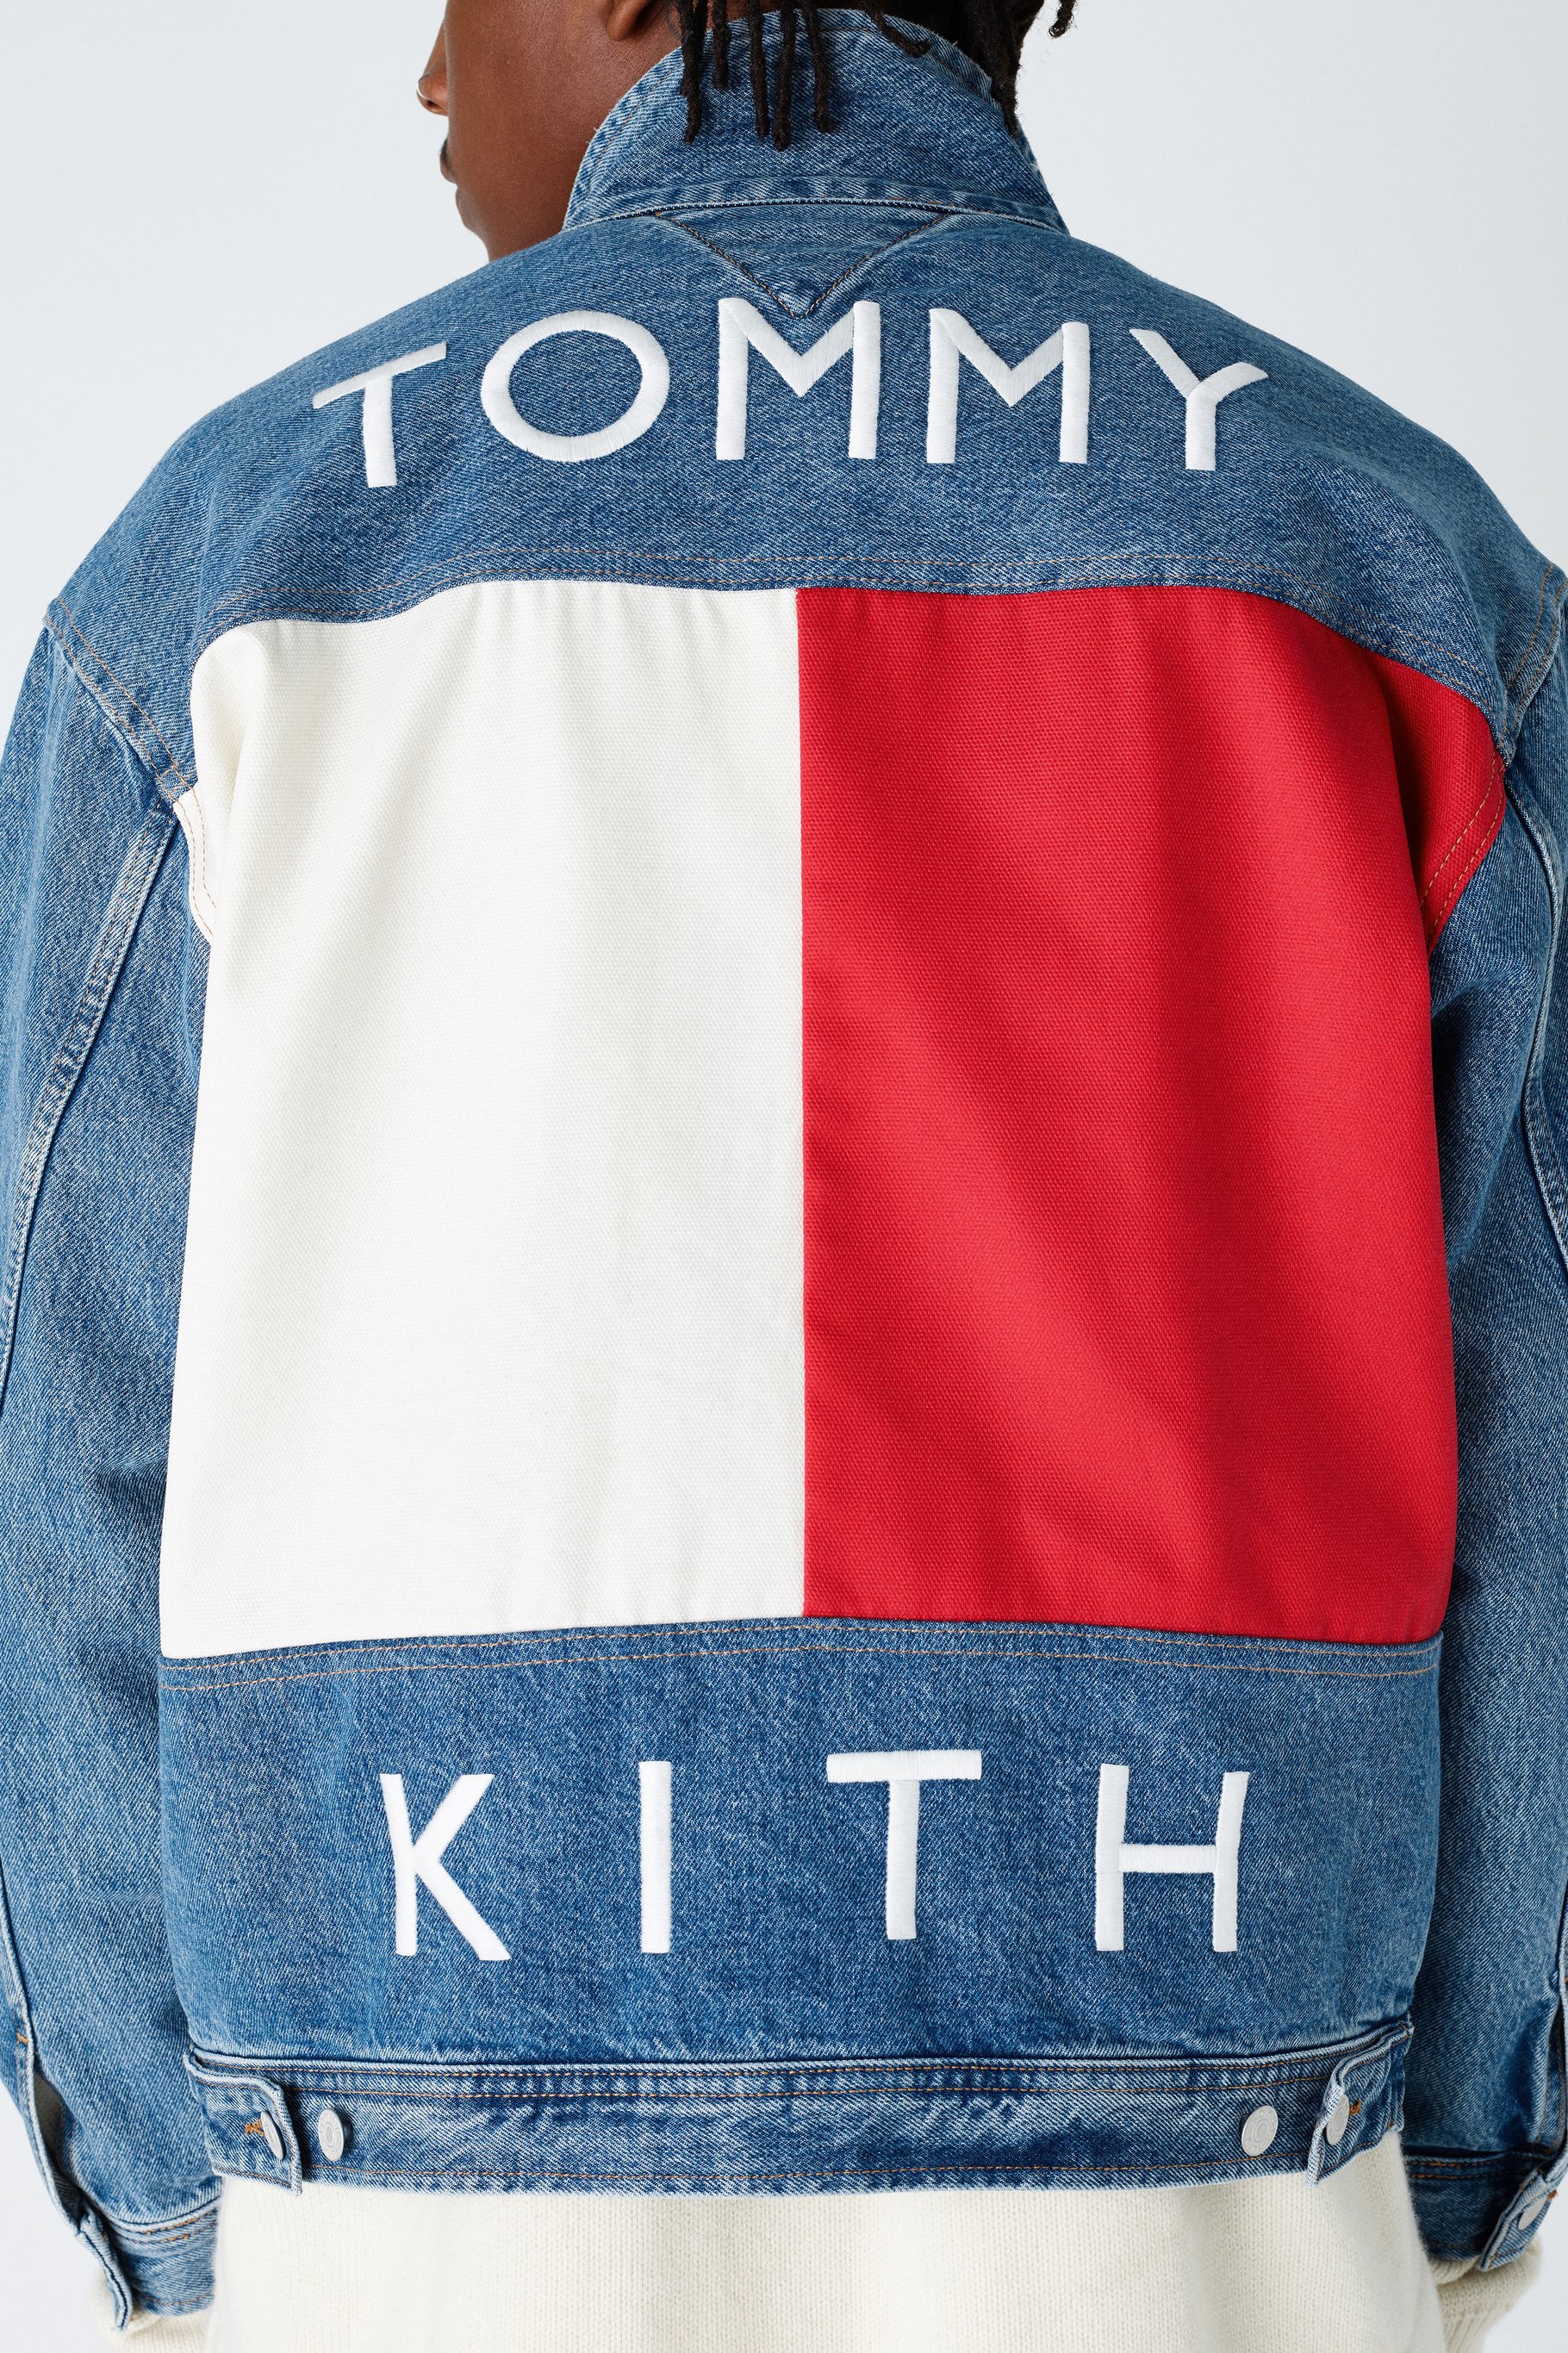 ロニー・ファイグが Tommy Hilfiger x KITH のコラボビジュアルを解禁 古き良き90年代のアメリカに回帰する注目のコレクションがまもなくリリース